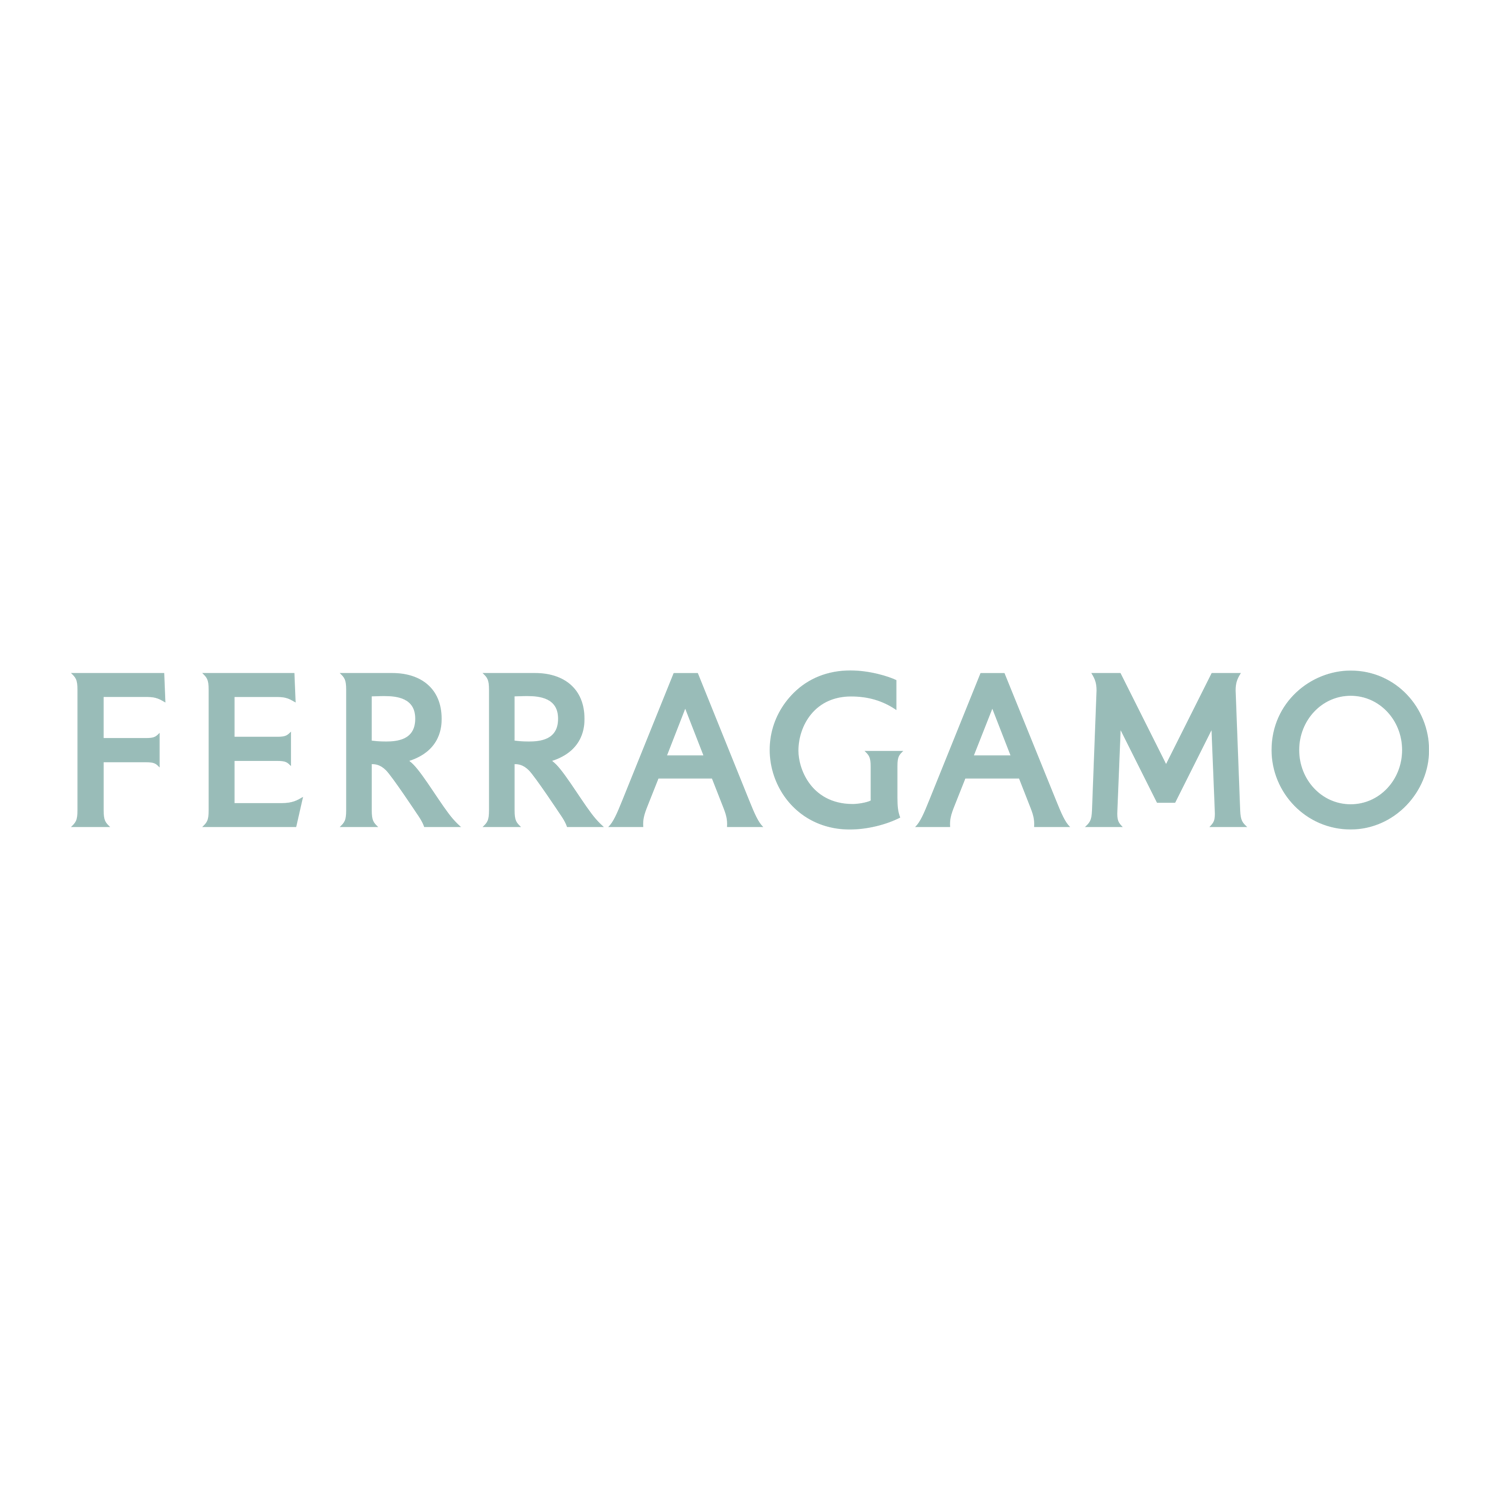 FERRAGAMO_LOGO.png